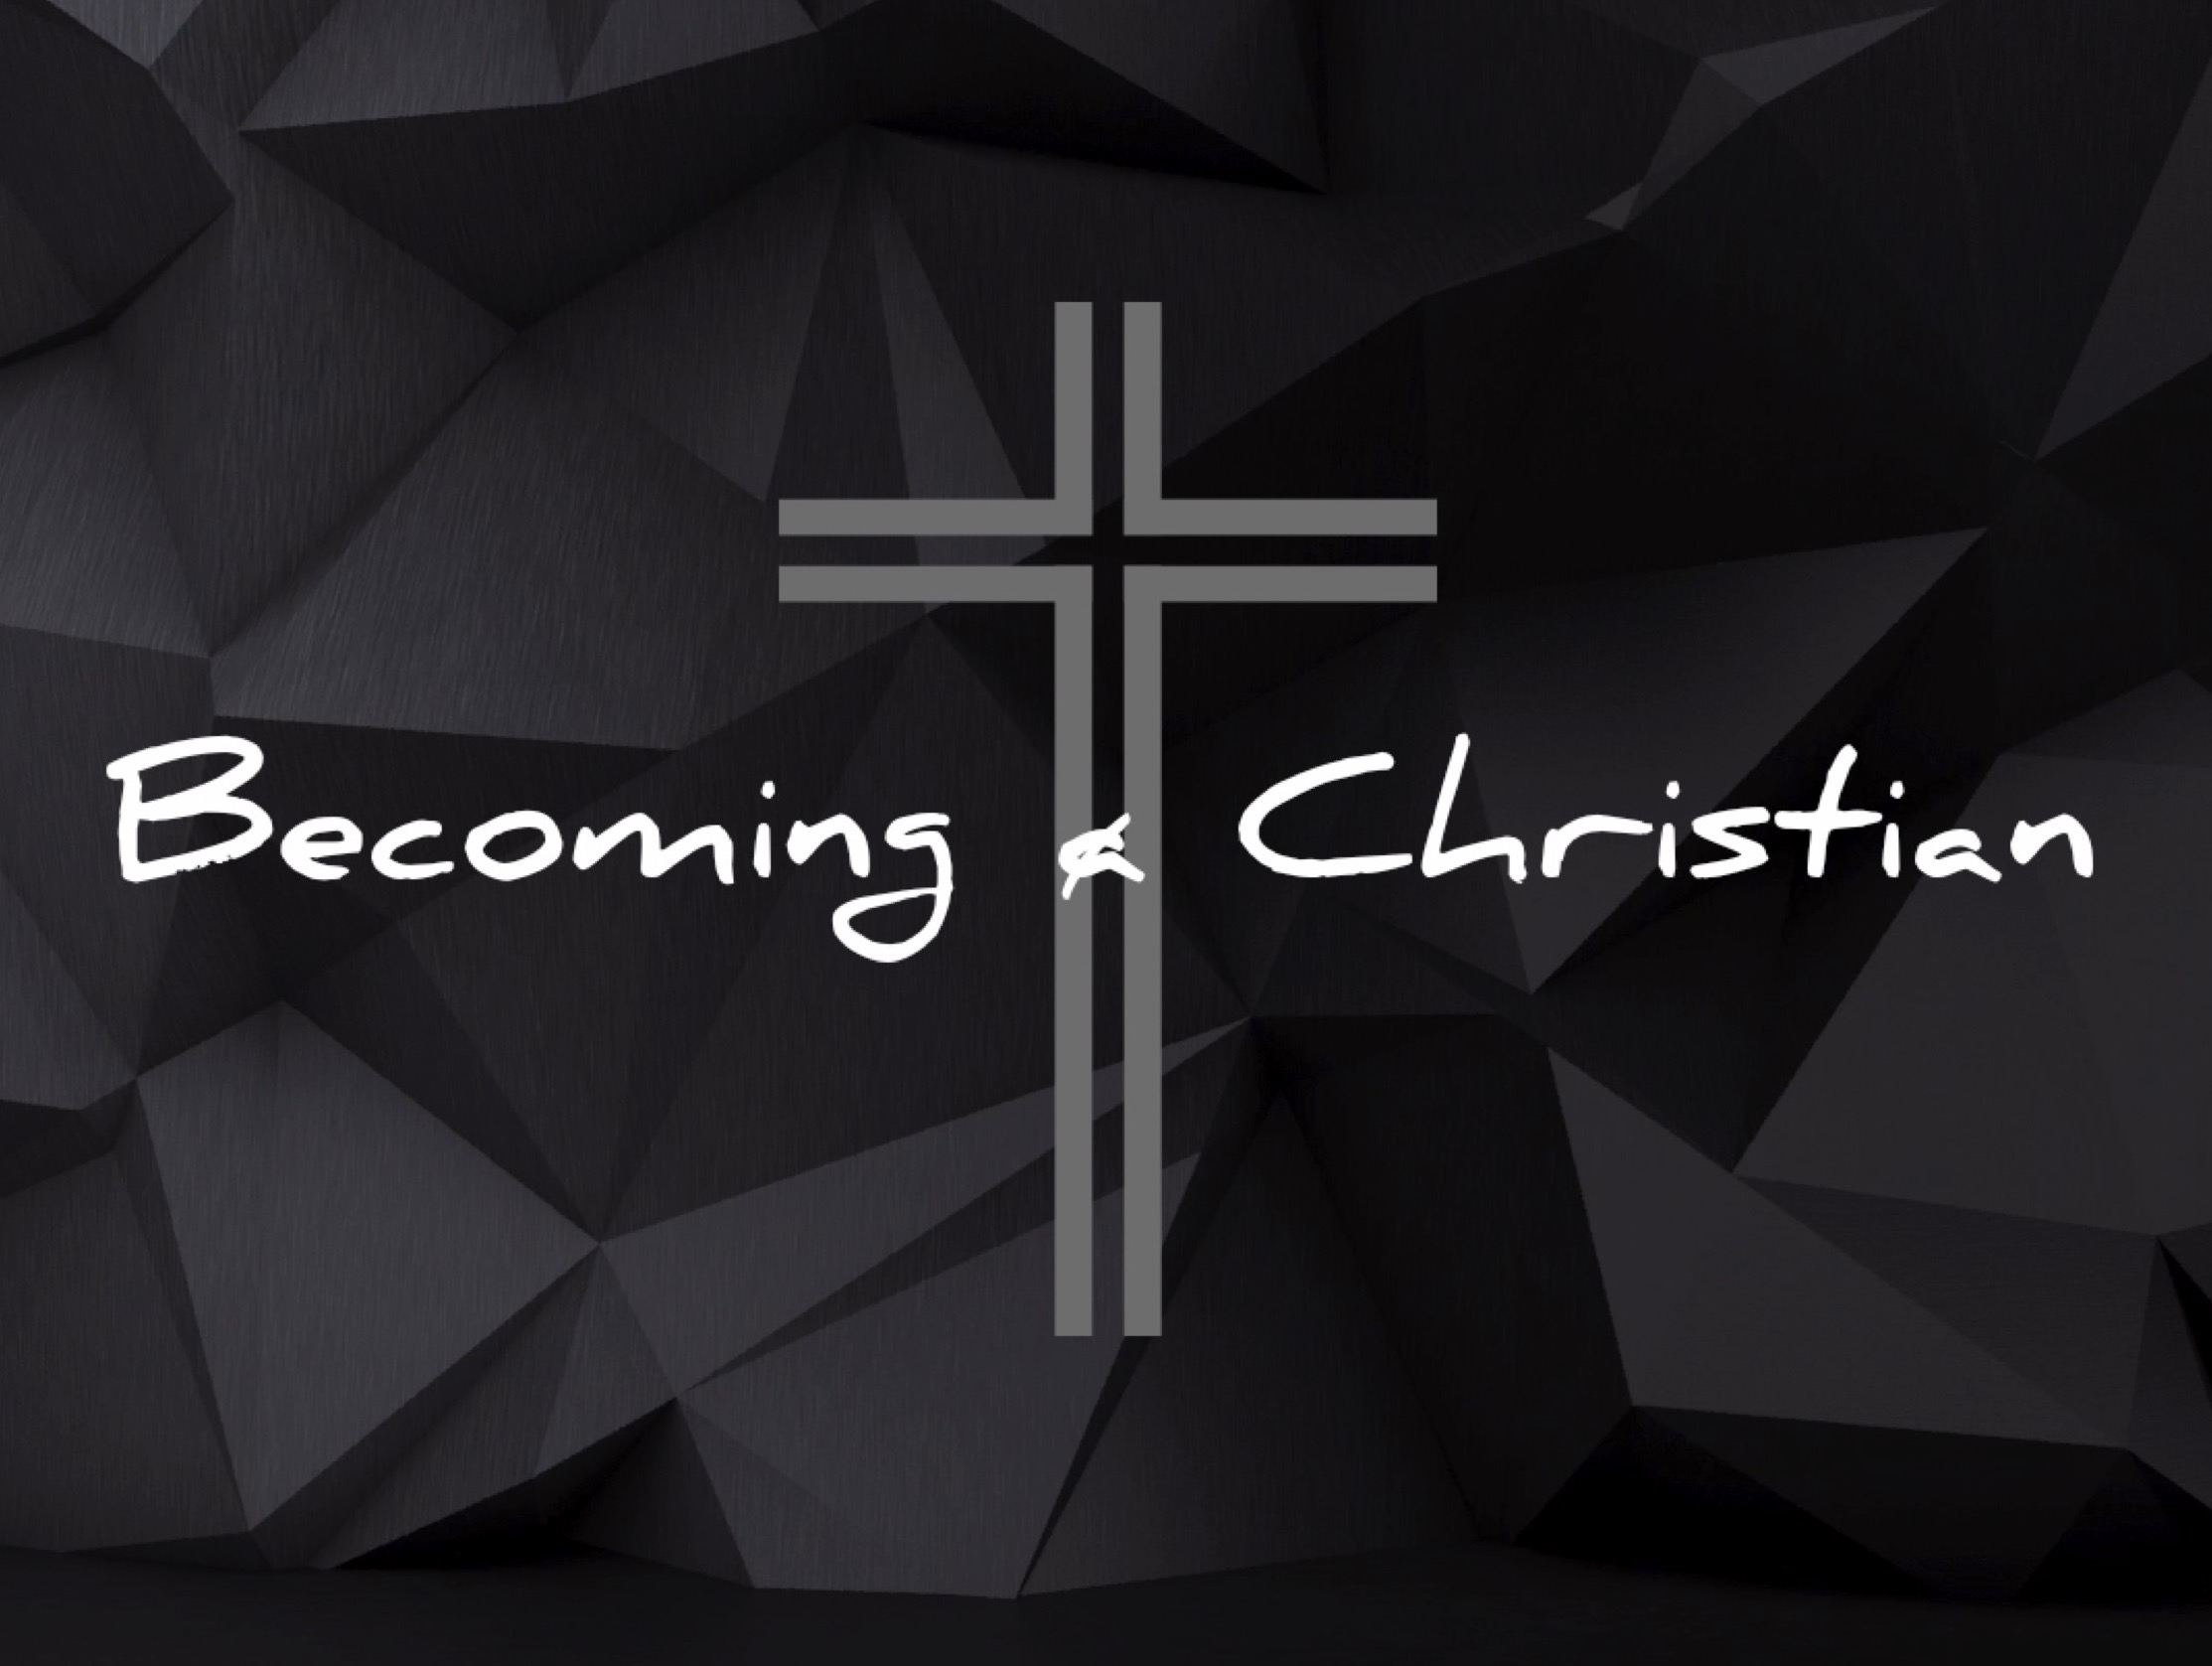 Ryan Post - "Becoming Christian"